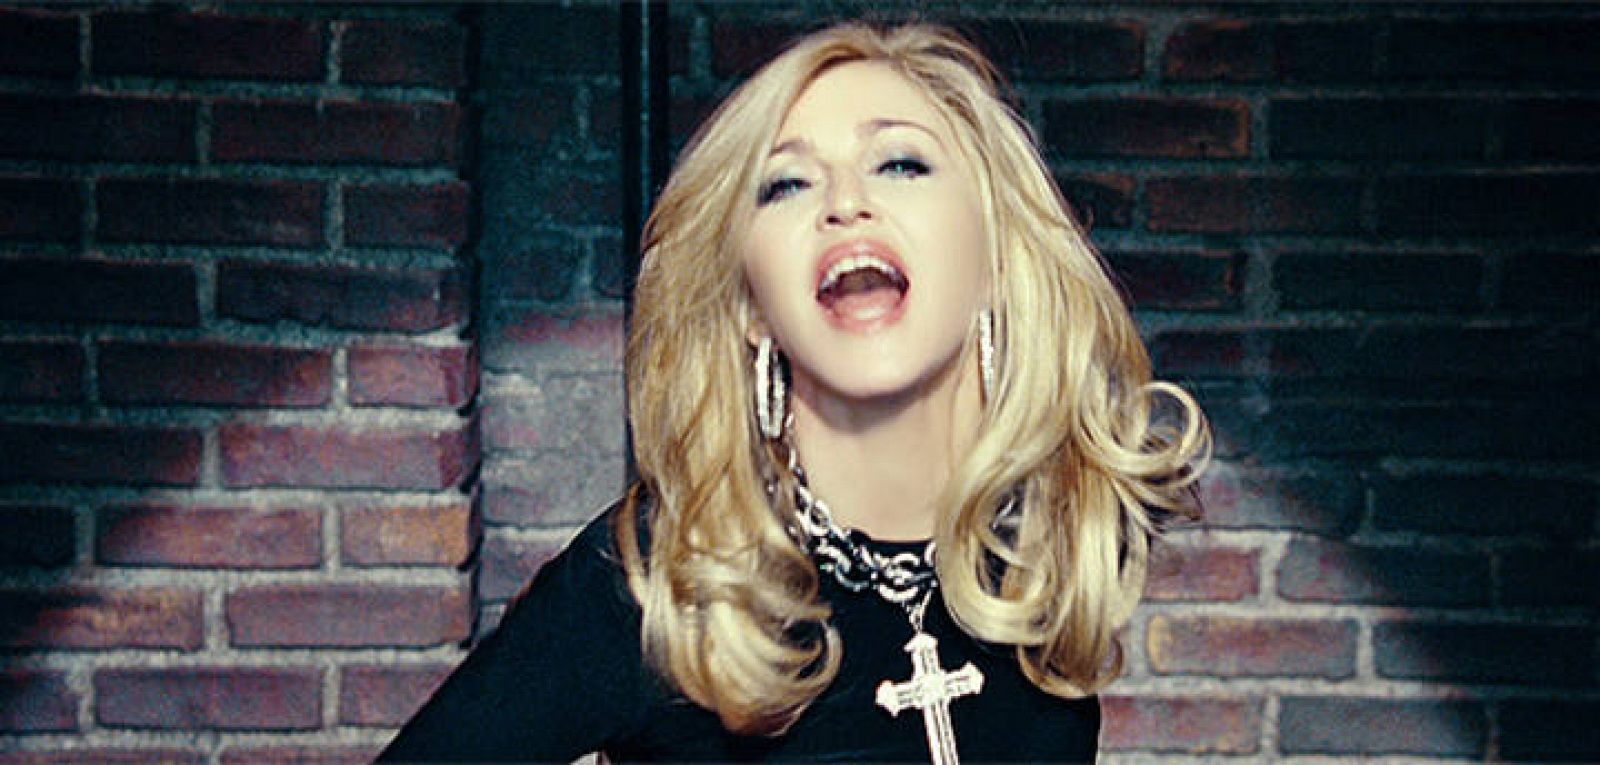  Consigue tu entrada para ver a Madonna en concierto